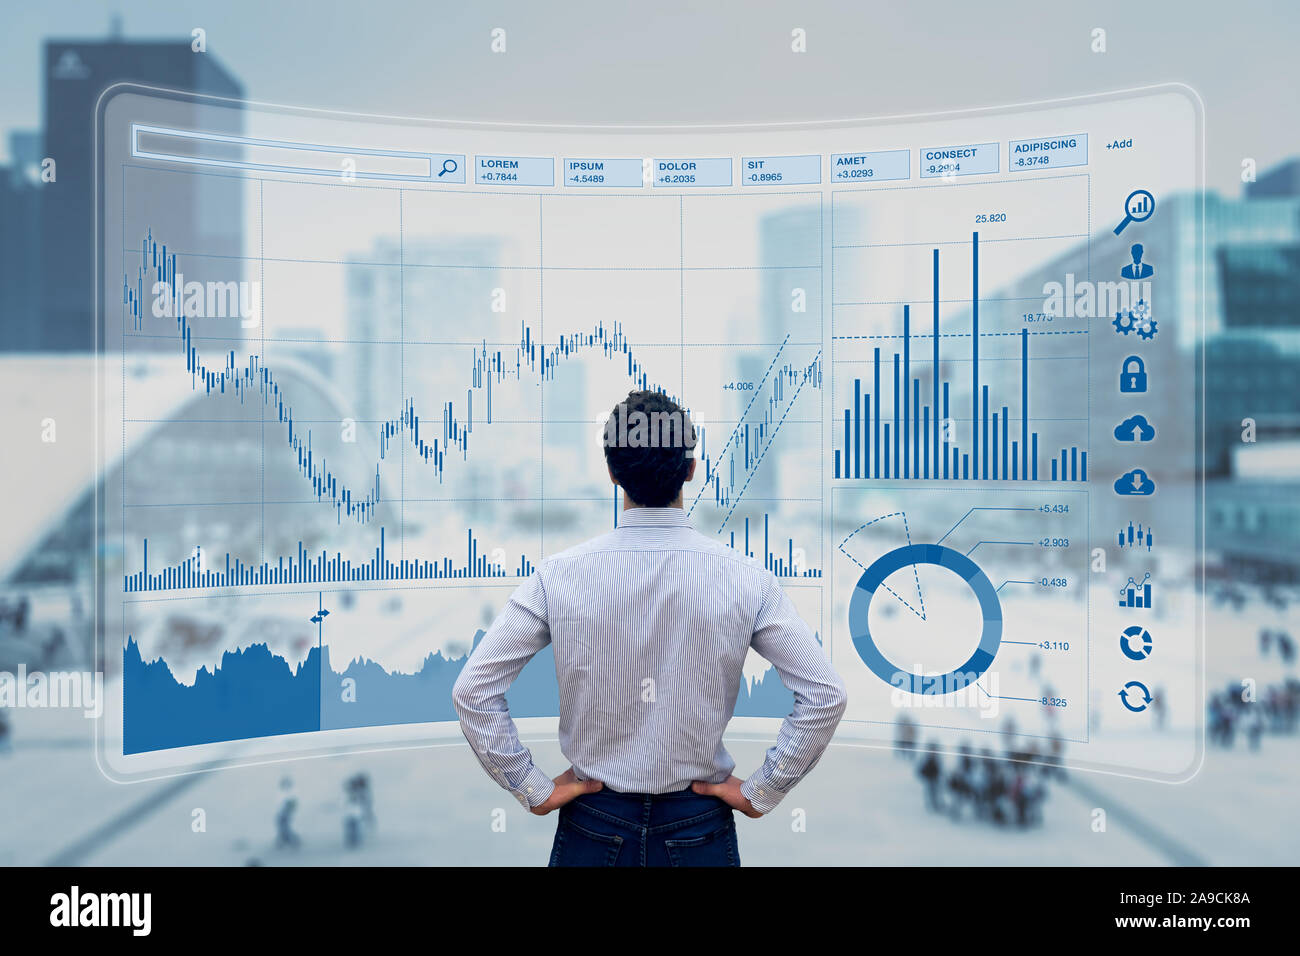 Trade finance manager analisi di indicatori per il mercato azionario per la migliore strategia di investimento, i dati finanziari e i grafici con edifici aziendali in background Foto Stock